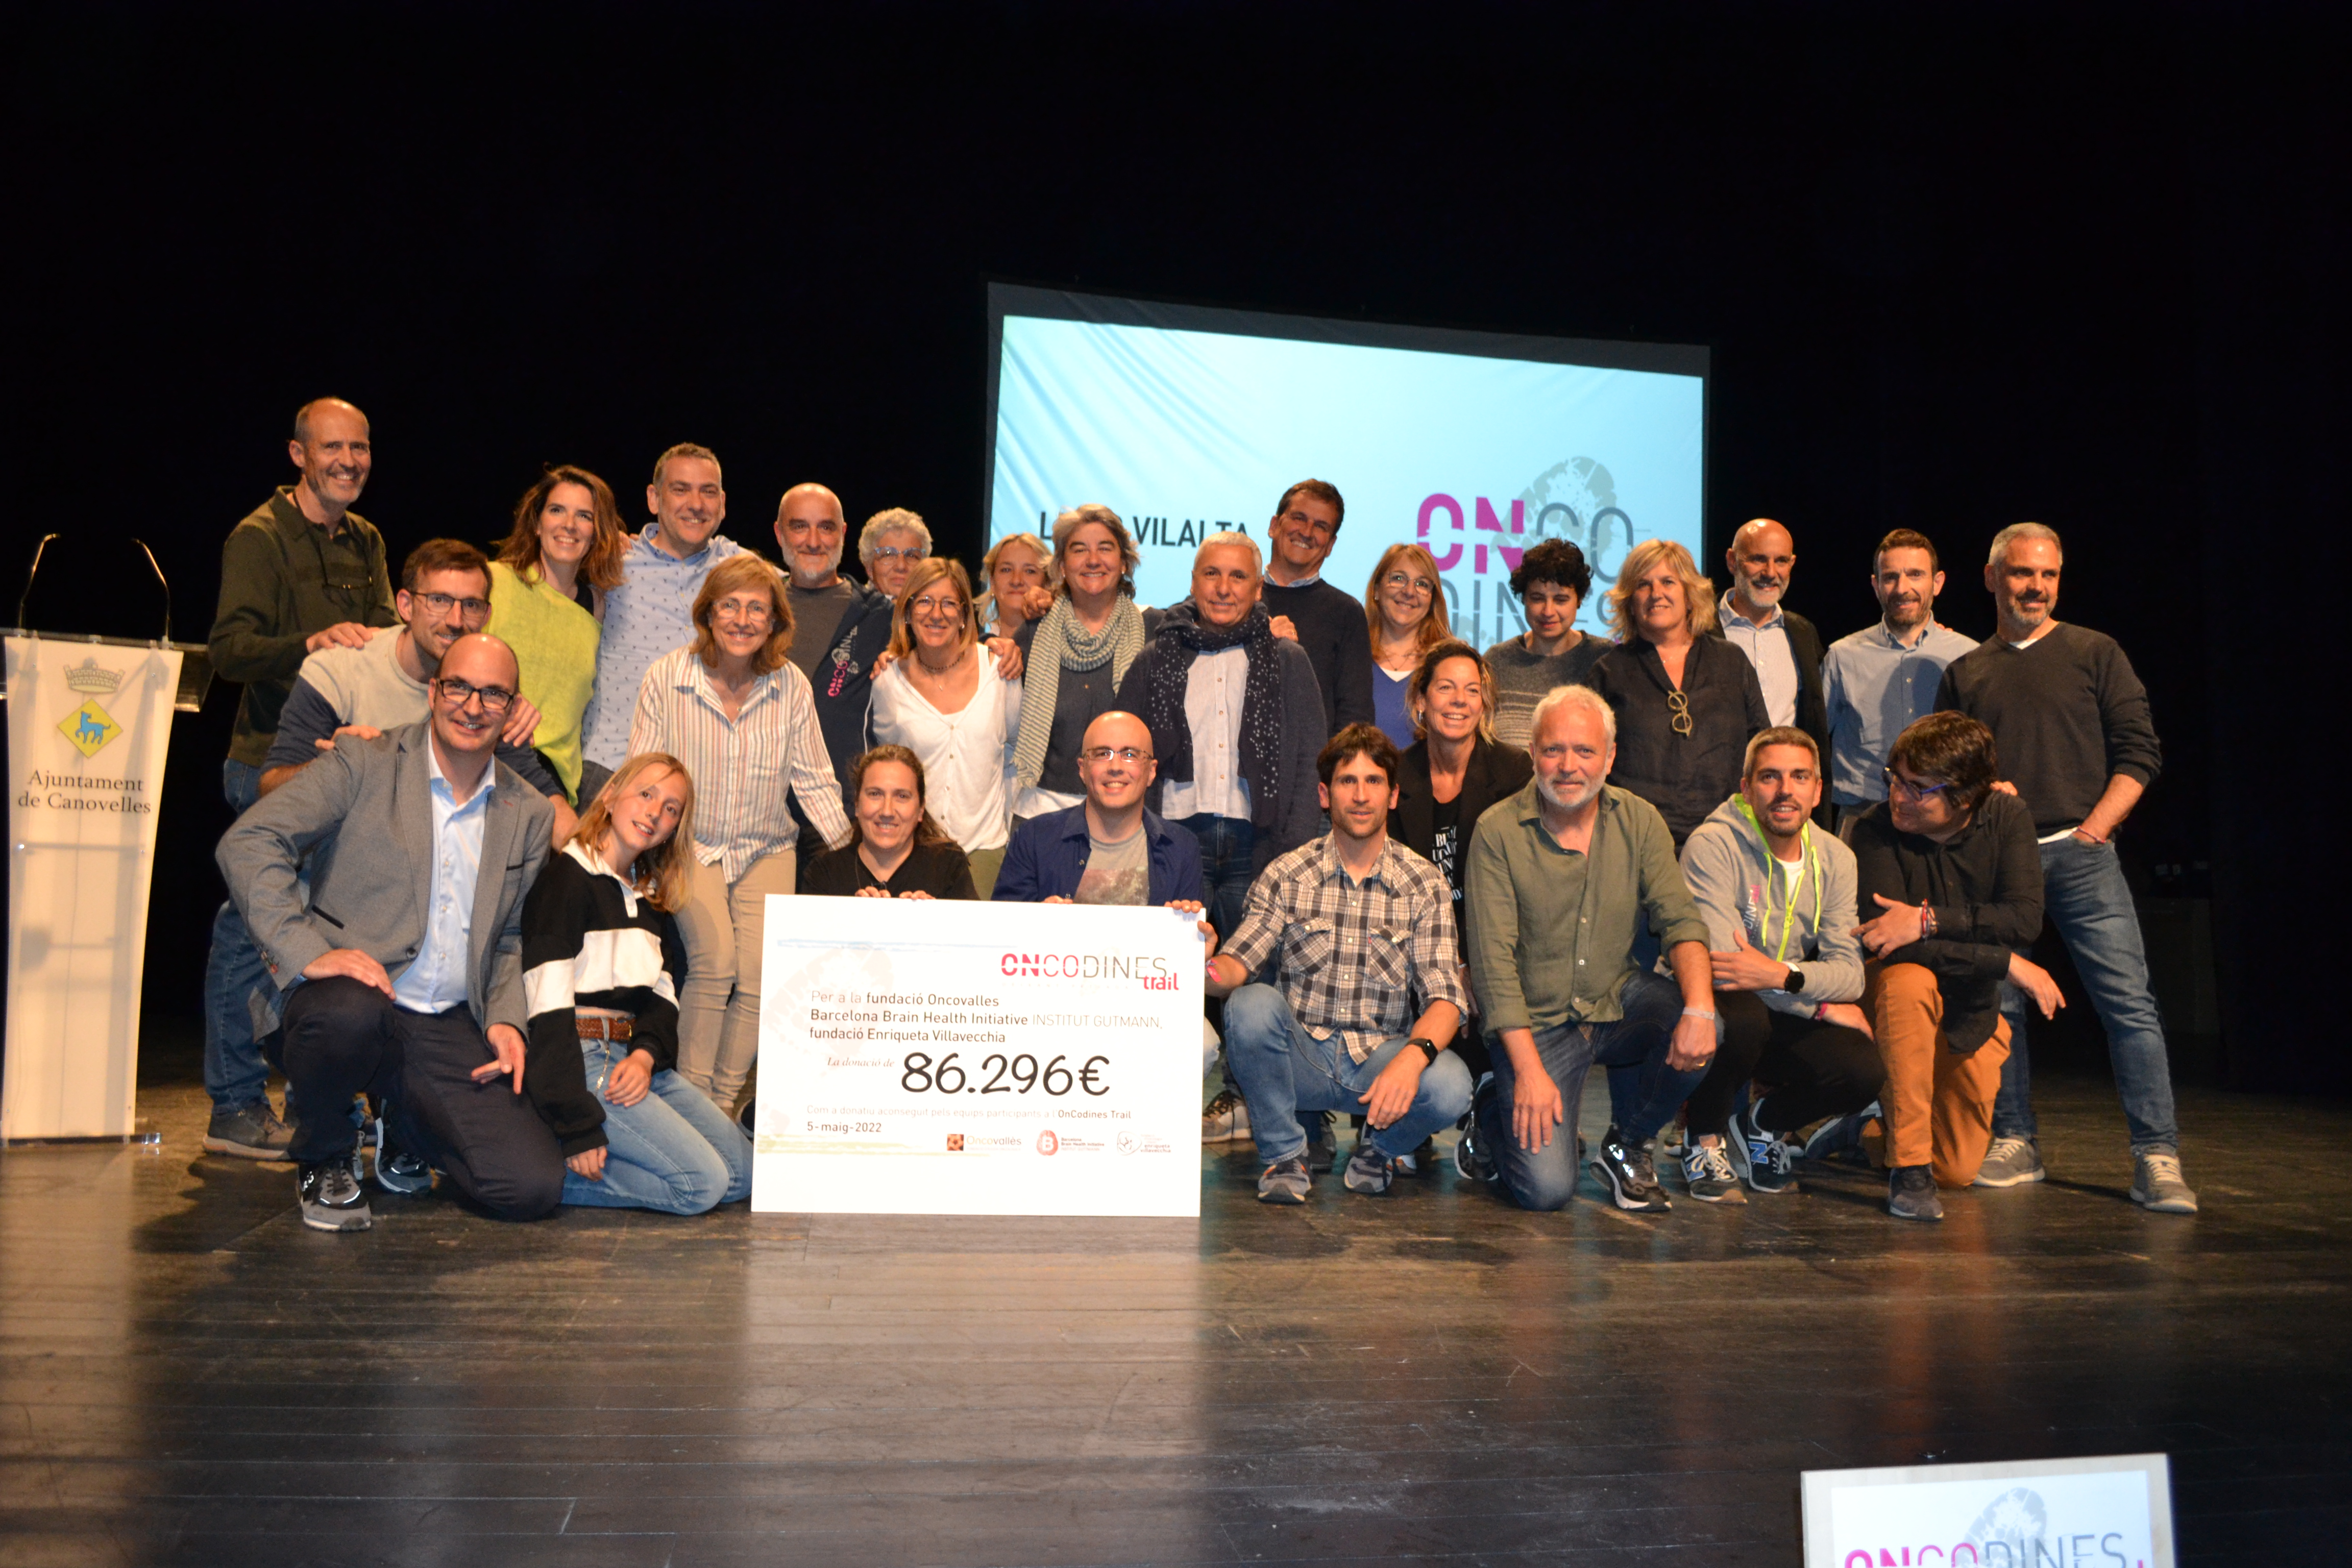 La segona edició de l'OnCodines es tanca amb 86.296 euros recollits contra el càncer